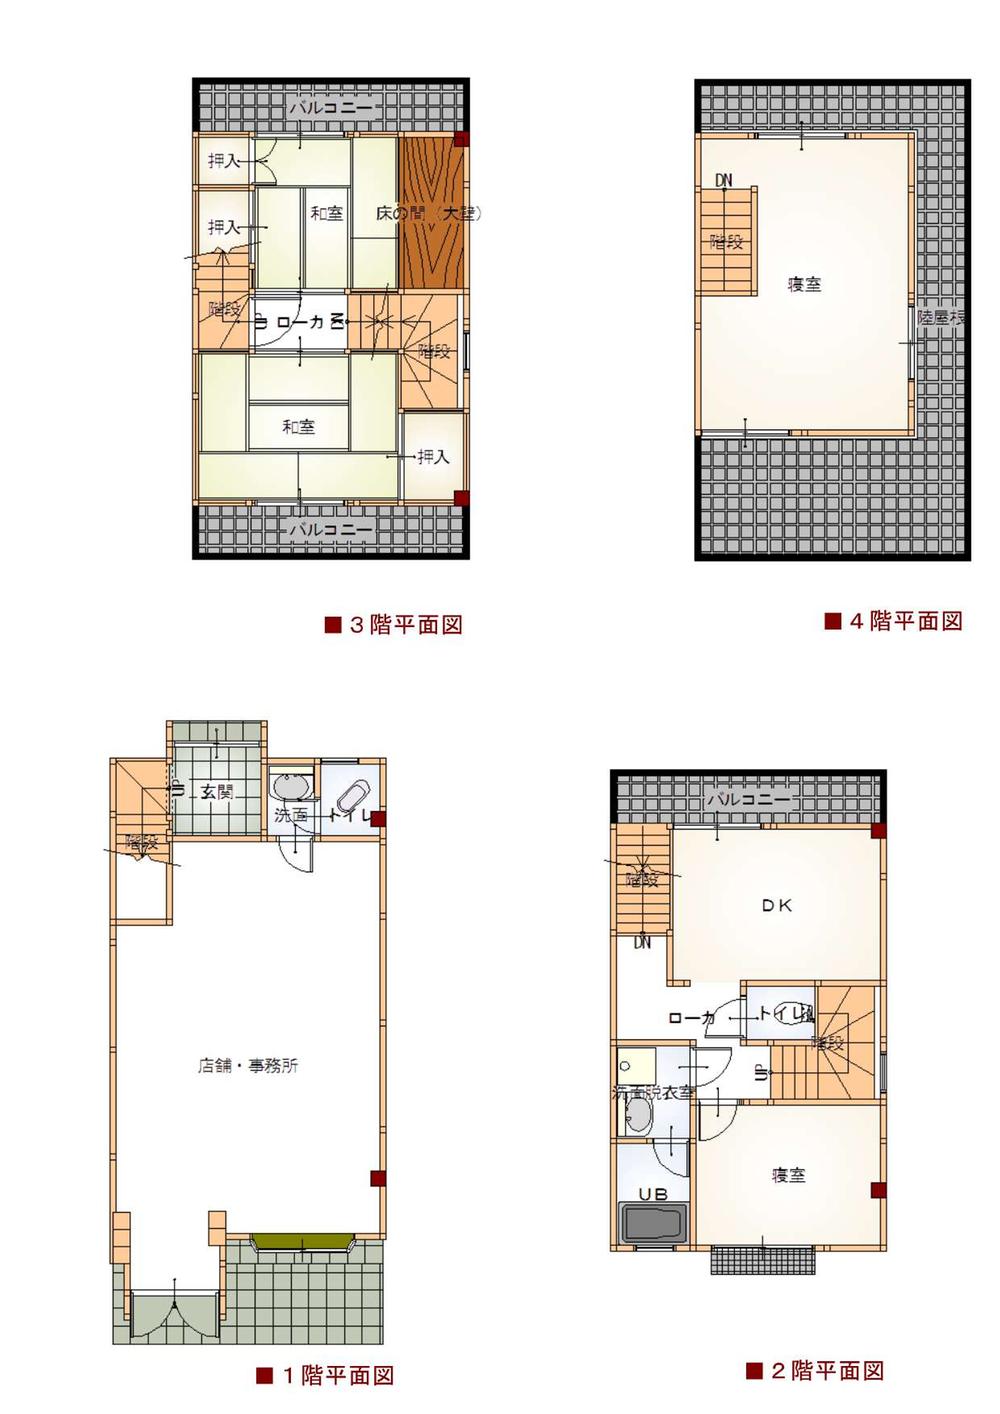 Floor plan. 7.9 million yen, 4DK, Land area 57.47 sq m , Building area 93.72 sq m